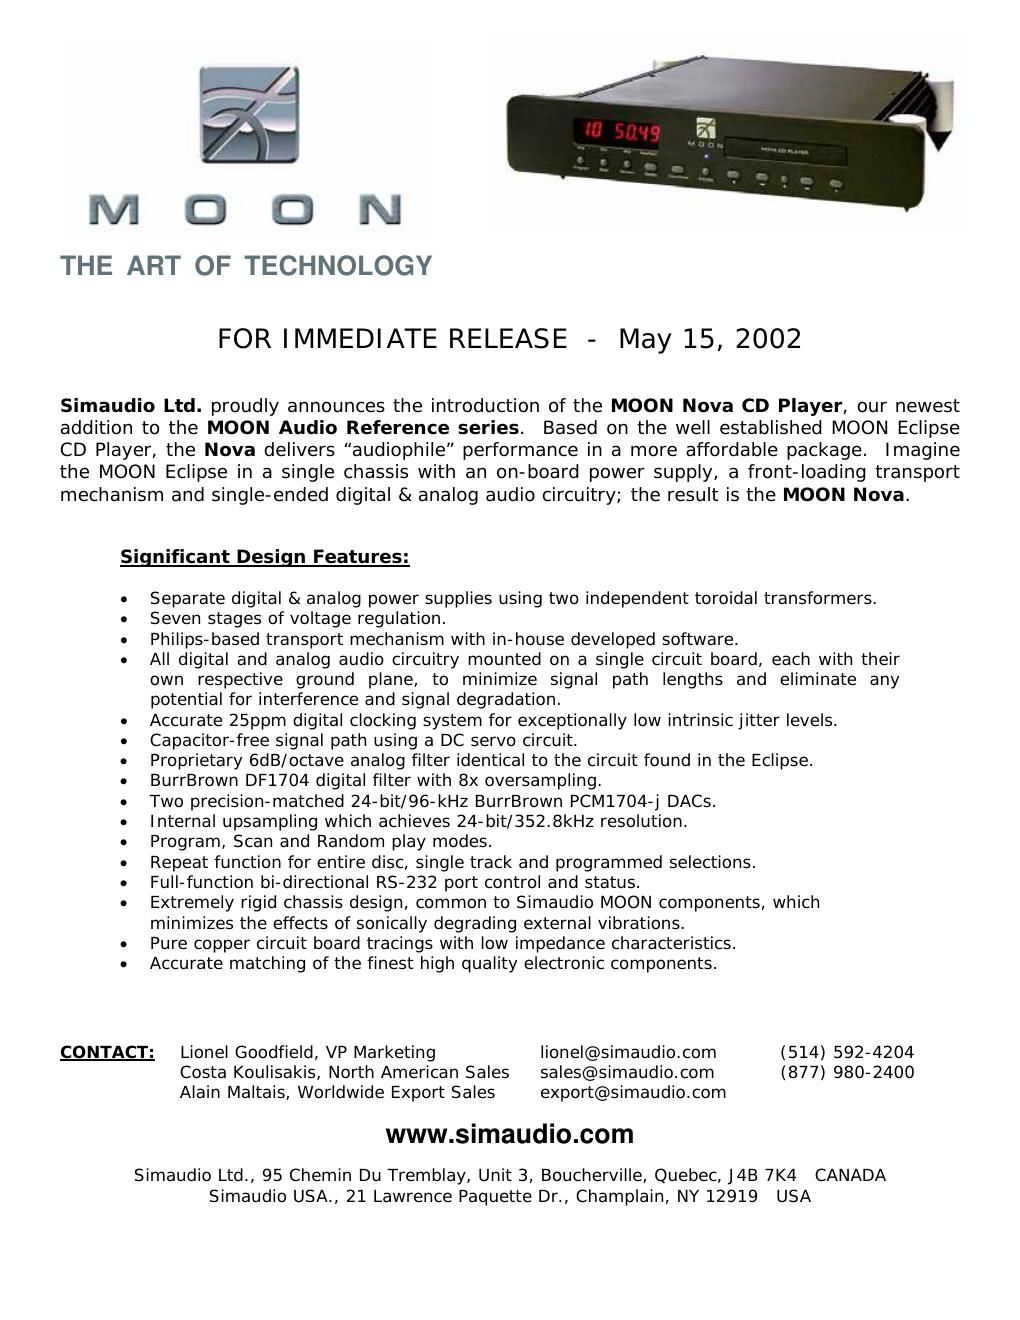 moon nova brochure